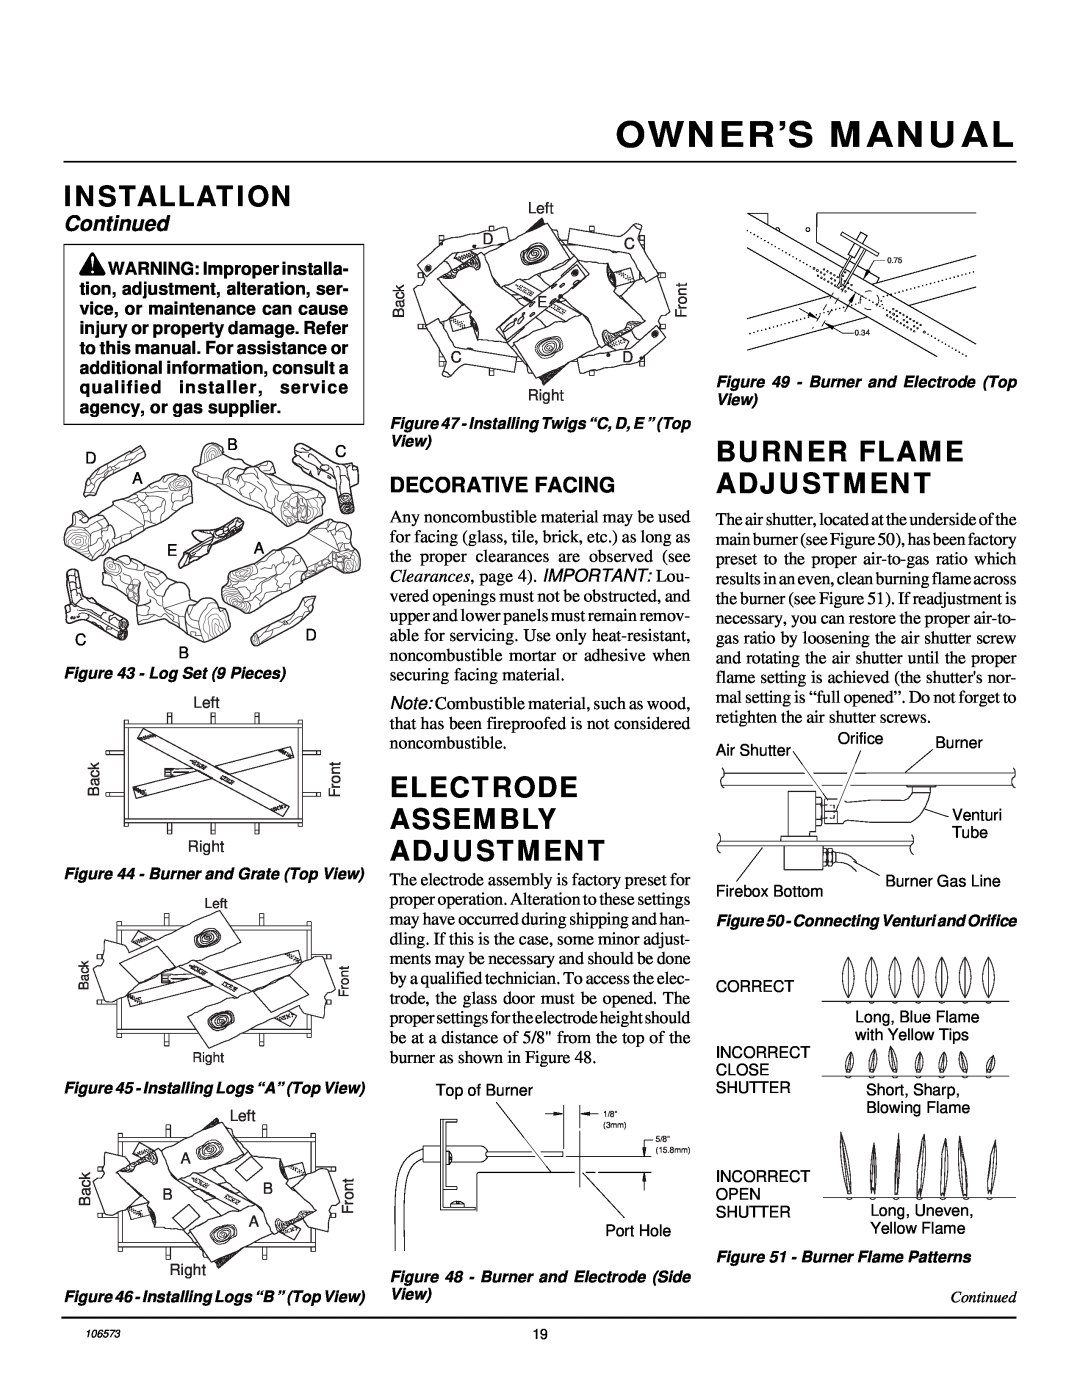 Desa EVDDVF36STN Burner Flame Adjustment, Electrode Assembly Adjustment, Decorative Facing, Owner’S Manual, Installation 